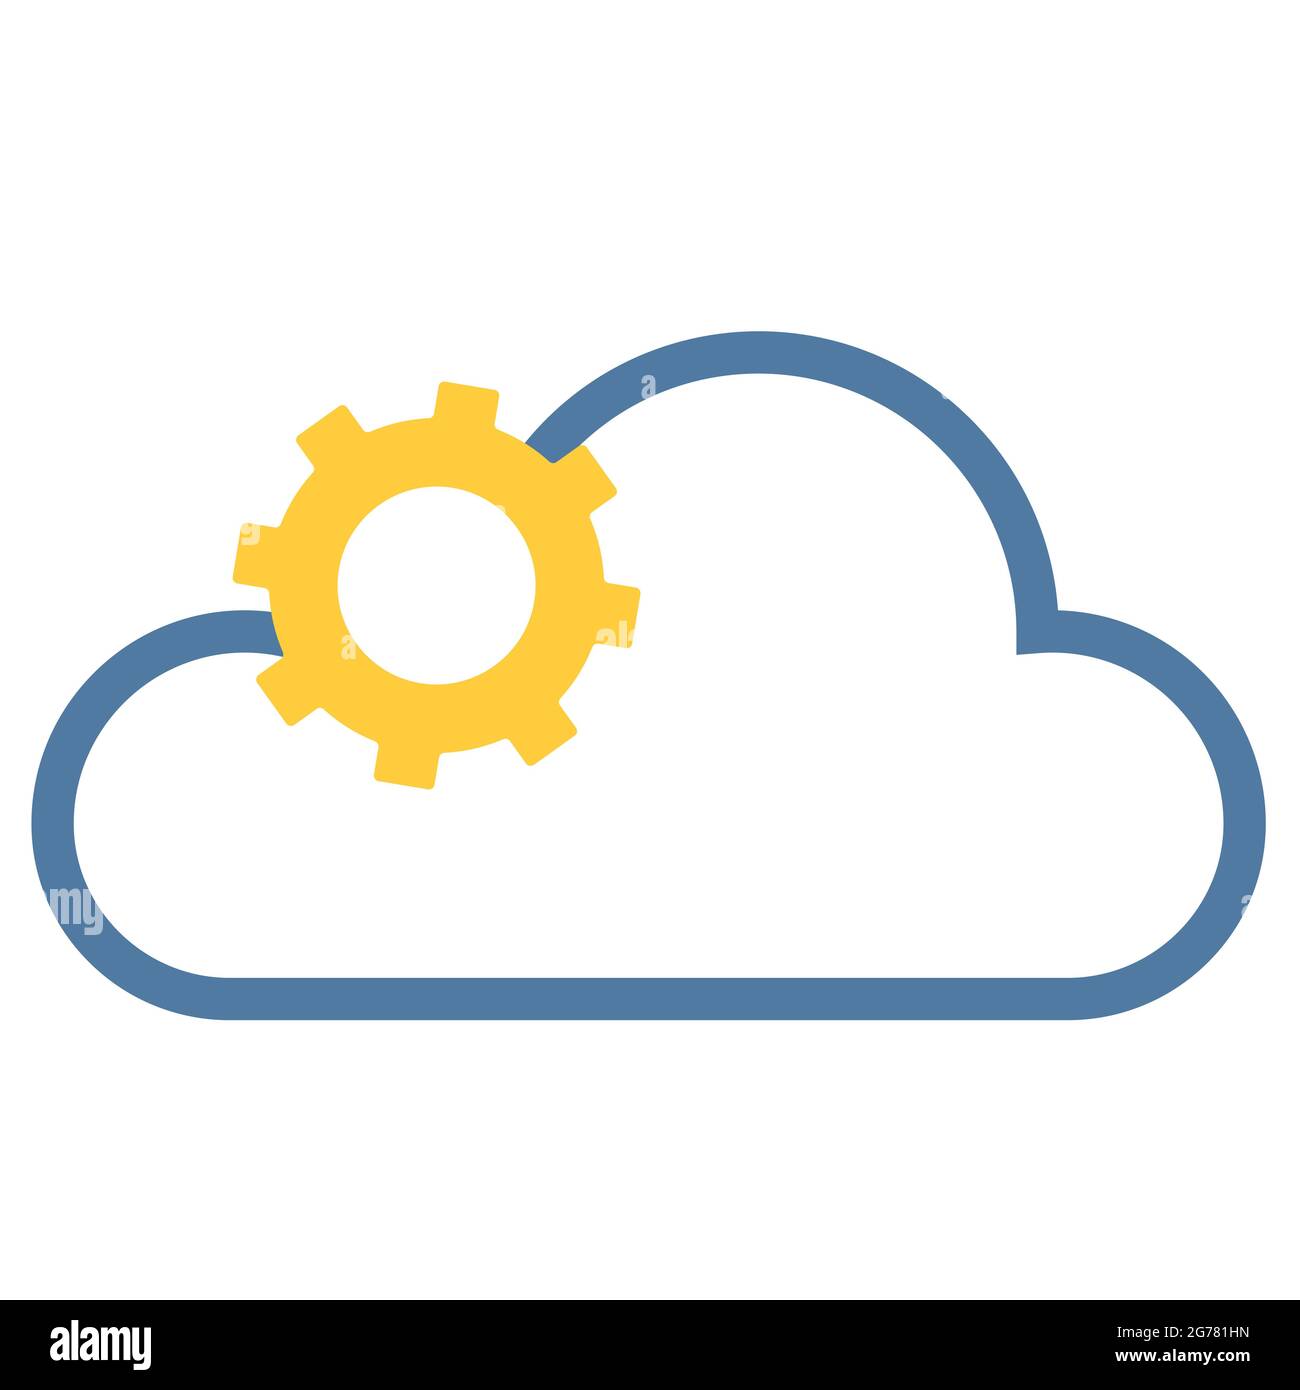 Logo für IT oder jedes andere Unternehmen: Ein gelbes Zahnrad in Form einer Sonne auf blauem Wolkenhintergrund. Kreative Vektorgrafik Stock Vektor